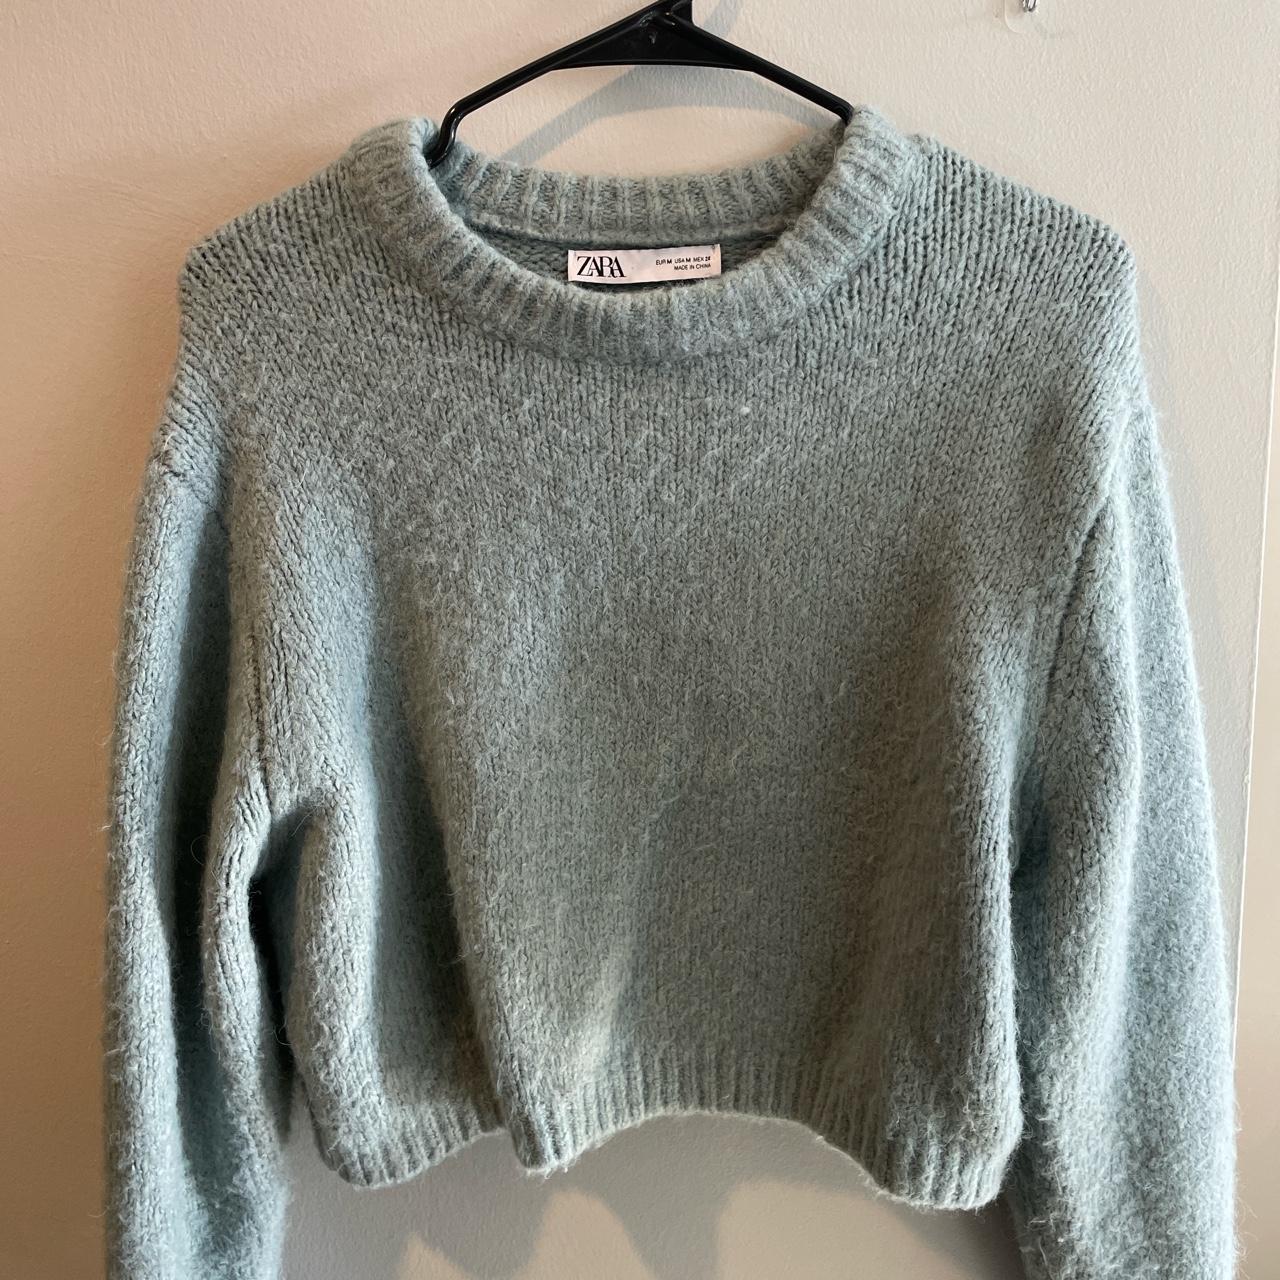 Zara Teal Blue Cropped Sweater Size M Wool-Blend... - Depop